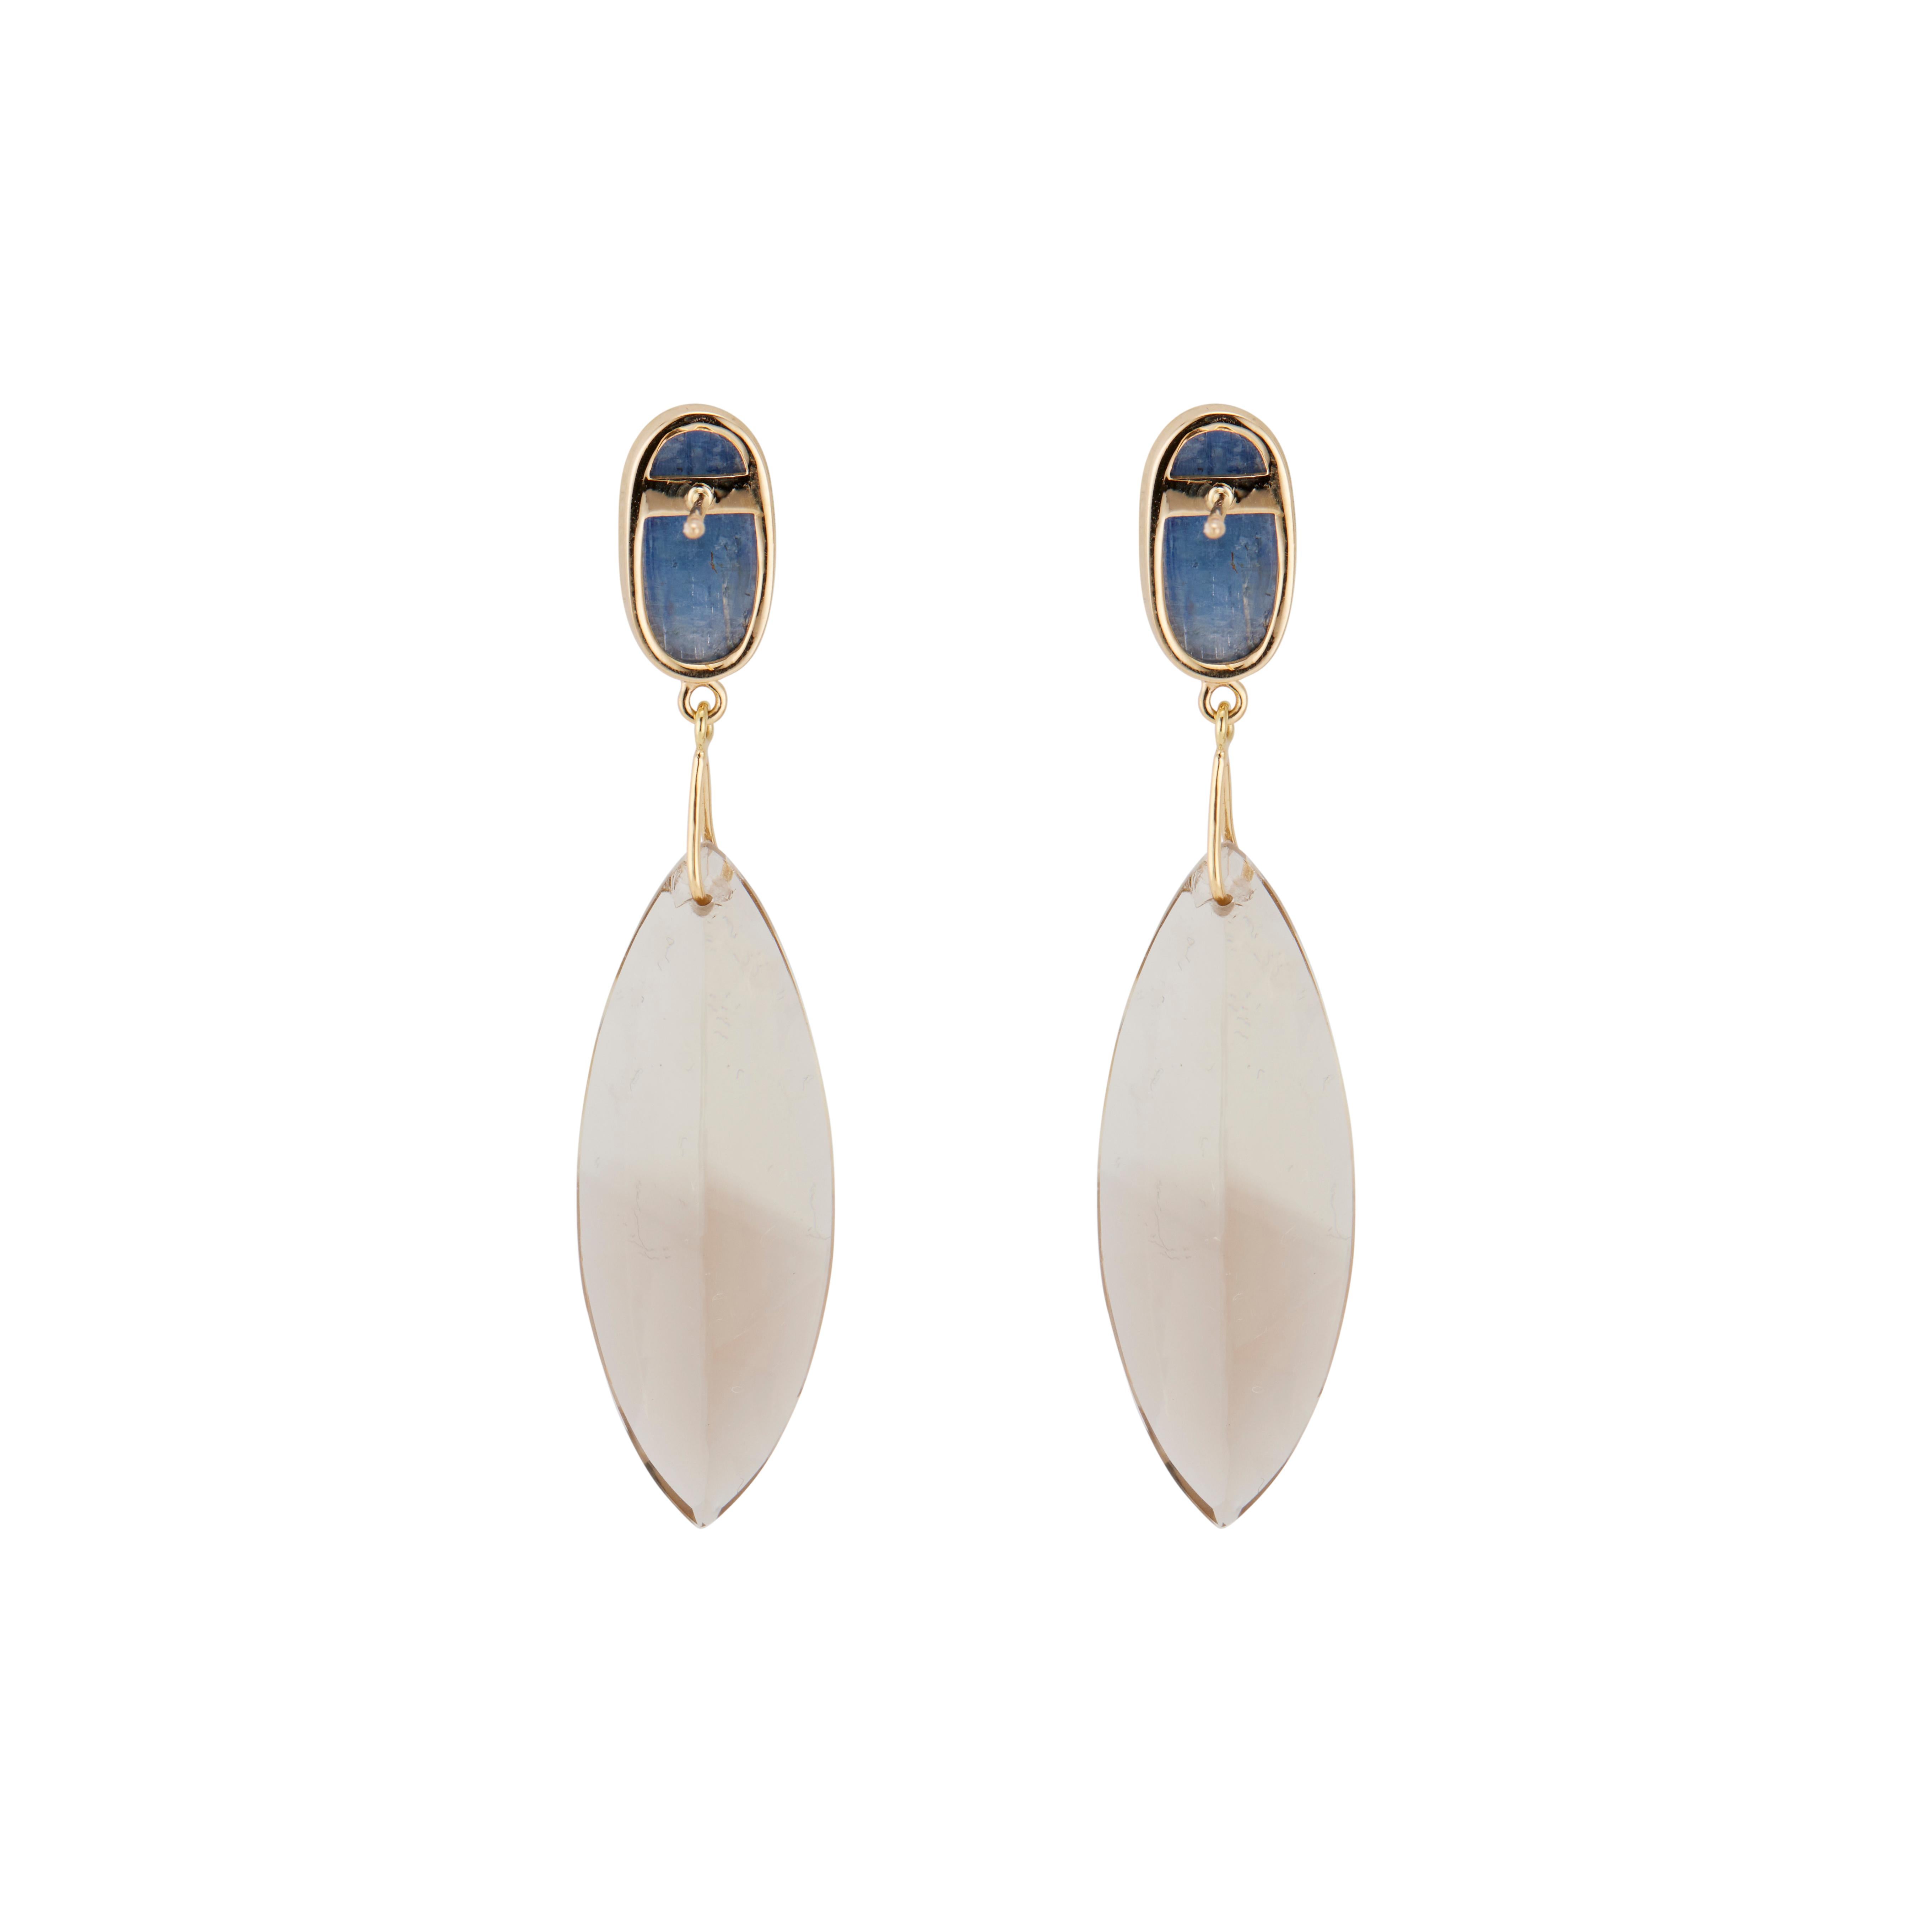 Boucles d'oreilles pendantes en diamant et quartz. 2 cabochons ovales bleus sertis de cyanite, sertis dans de l'or jaune 14k avec deux pendentifs en quartz fumé. Conçu et fabriqué dans l'atelier de Peter Suchy. Notez que ces boucles d'oreilles sont